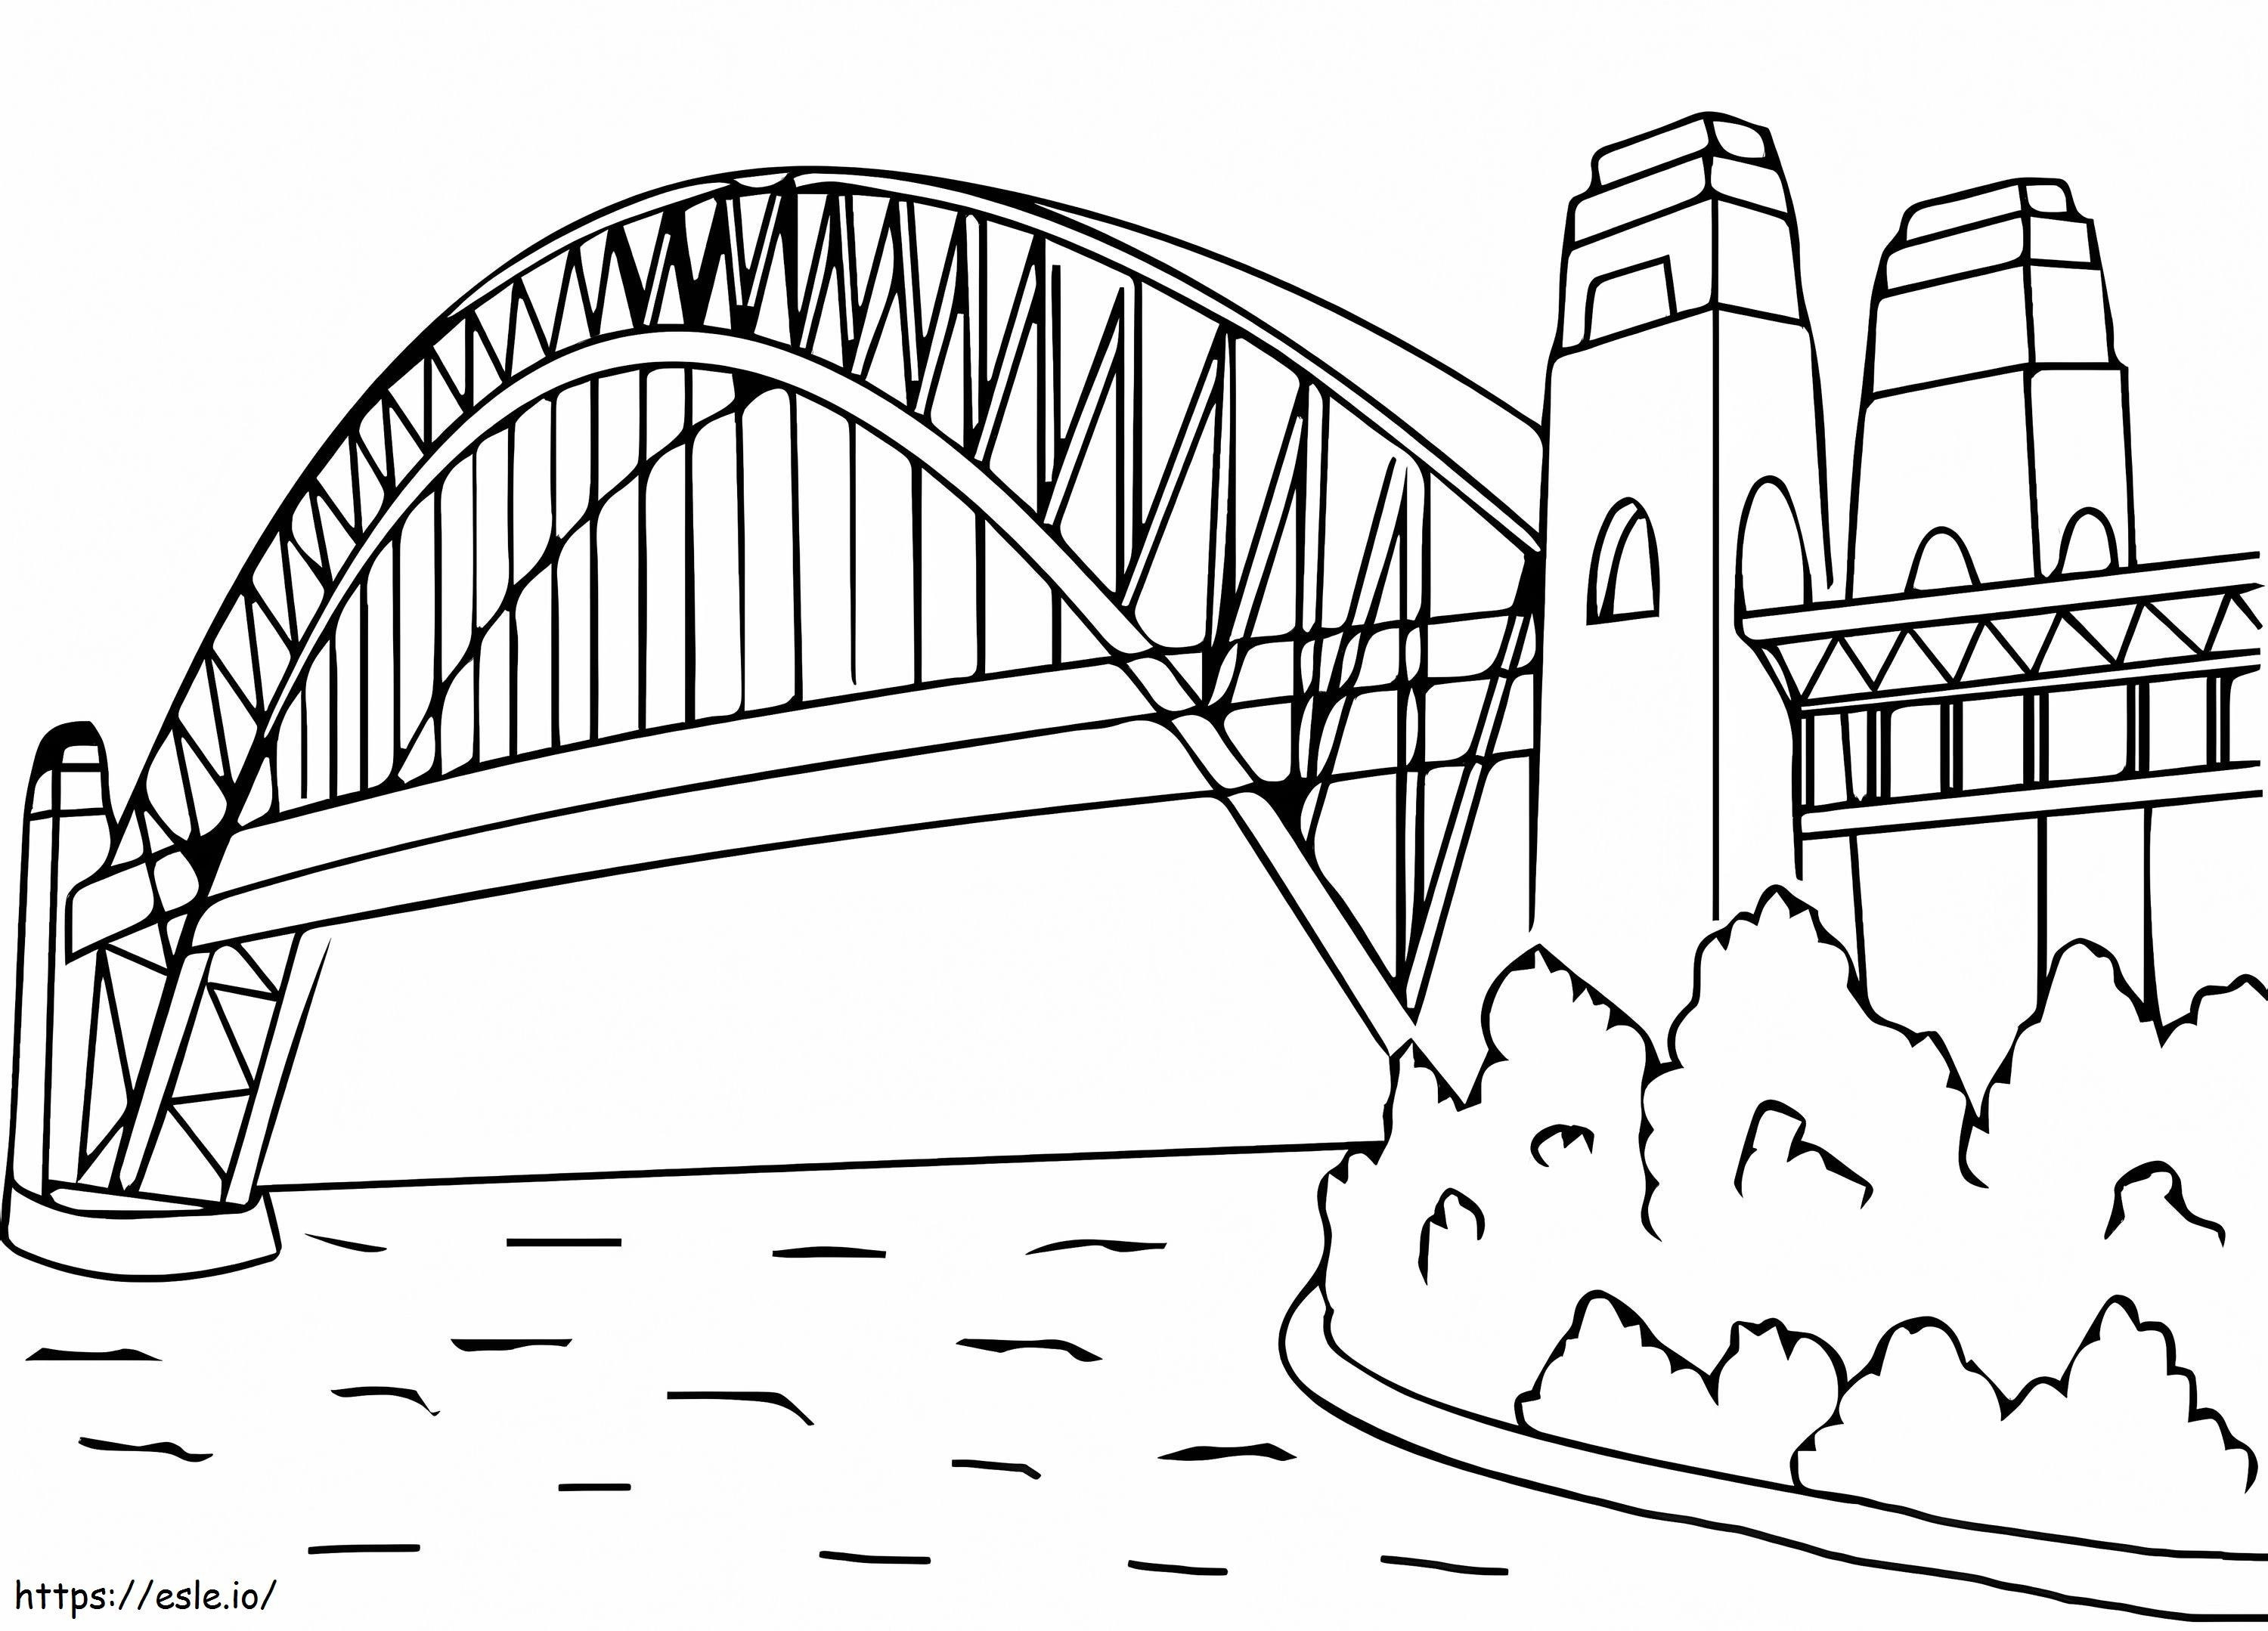 Morden Bridge coloring page